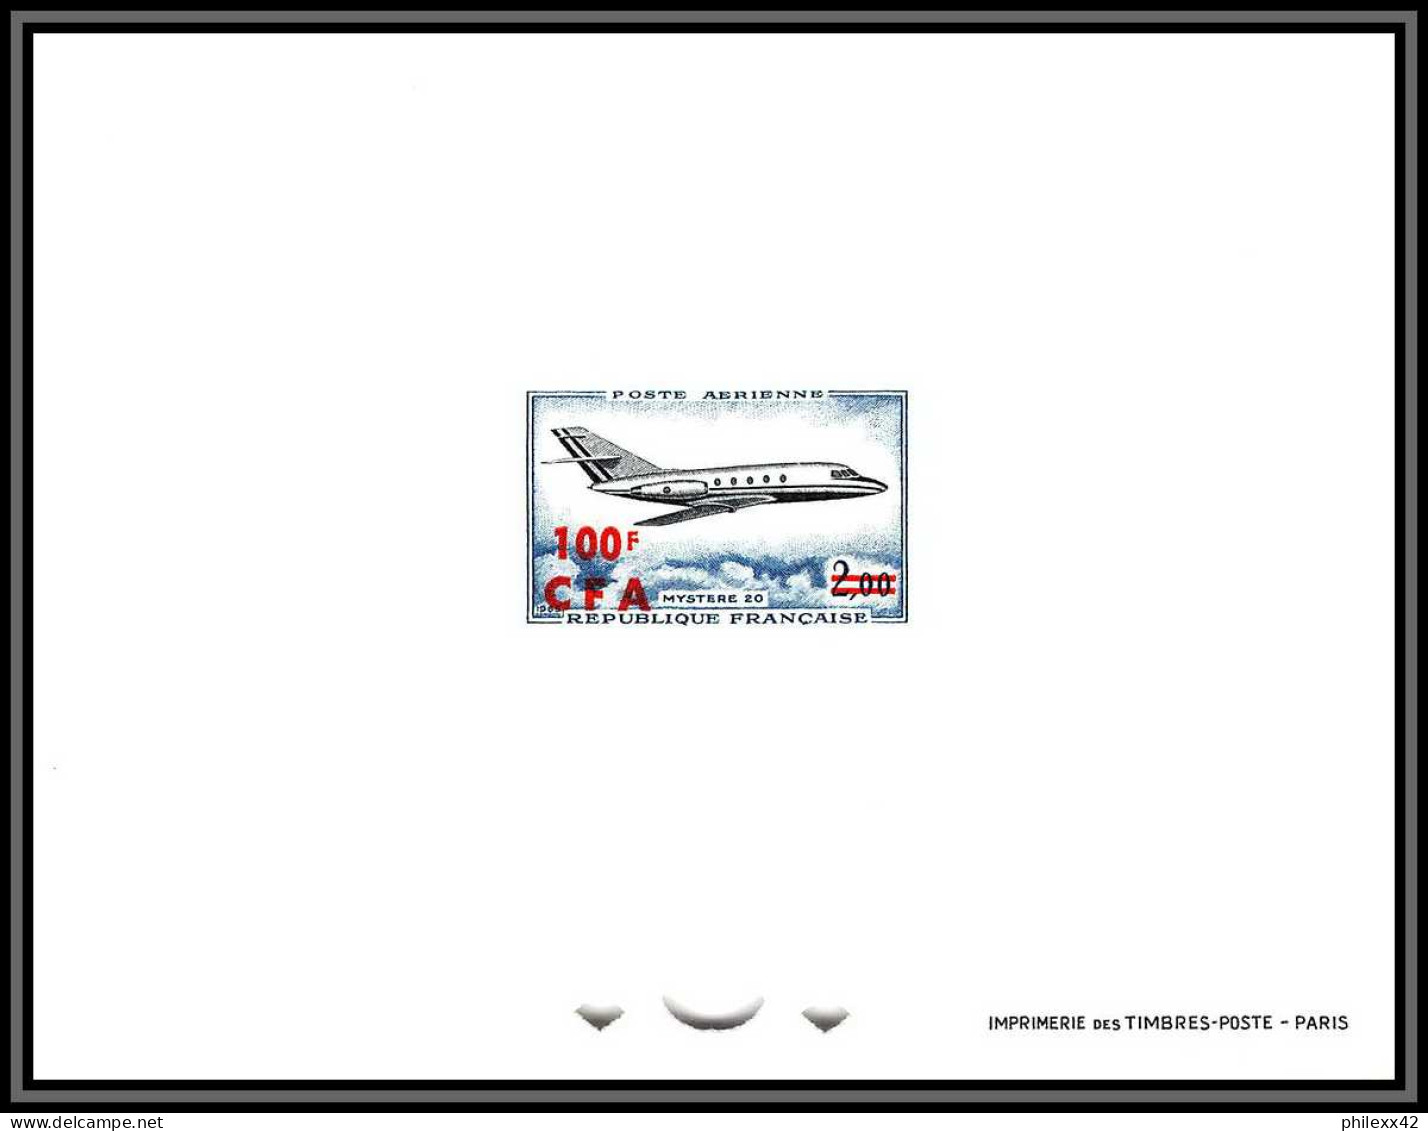 France / Cfa Reunion PA Poste Aerienne N°61 Mystere 20 Pa 42 épreuve De Luxe (deluxe Proof) - Airmail